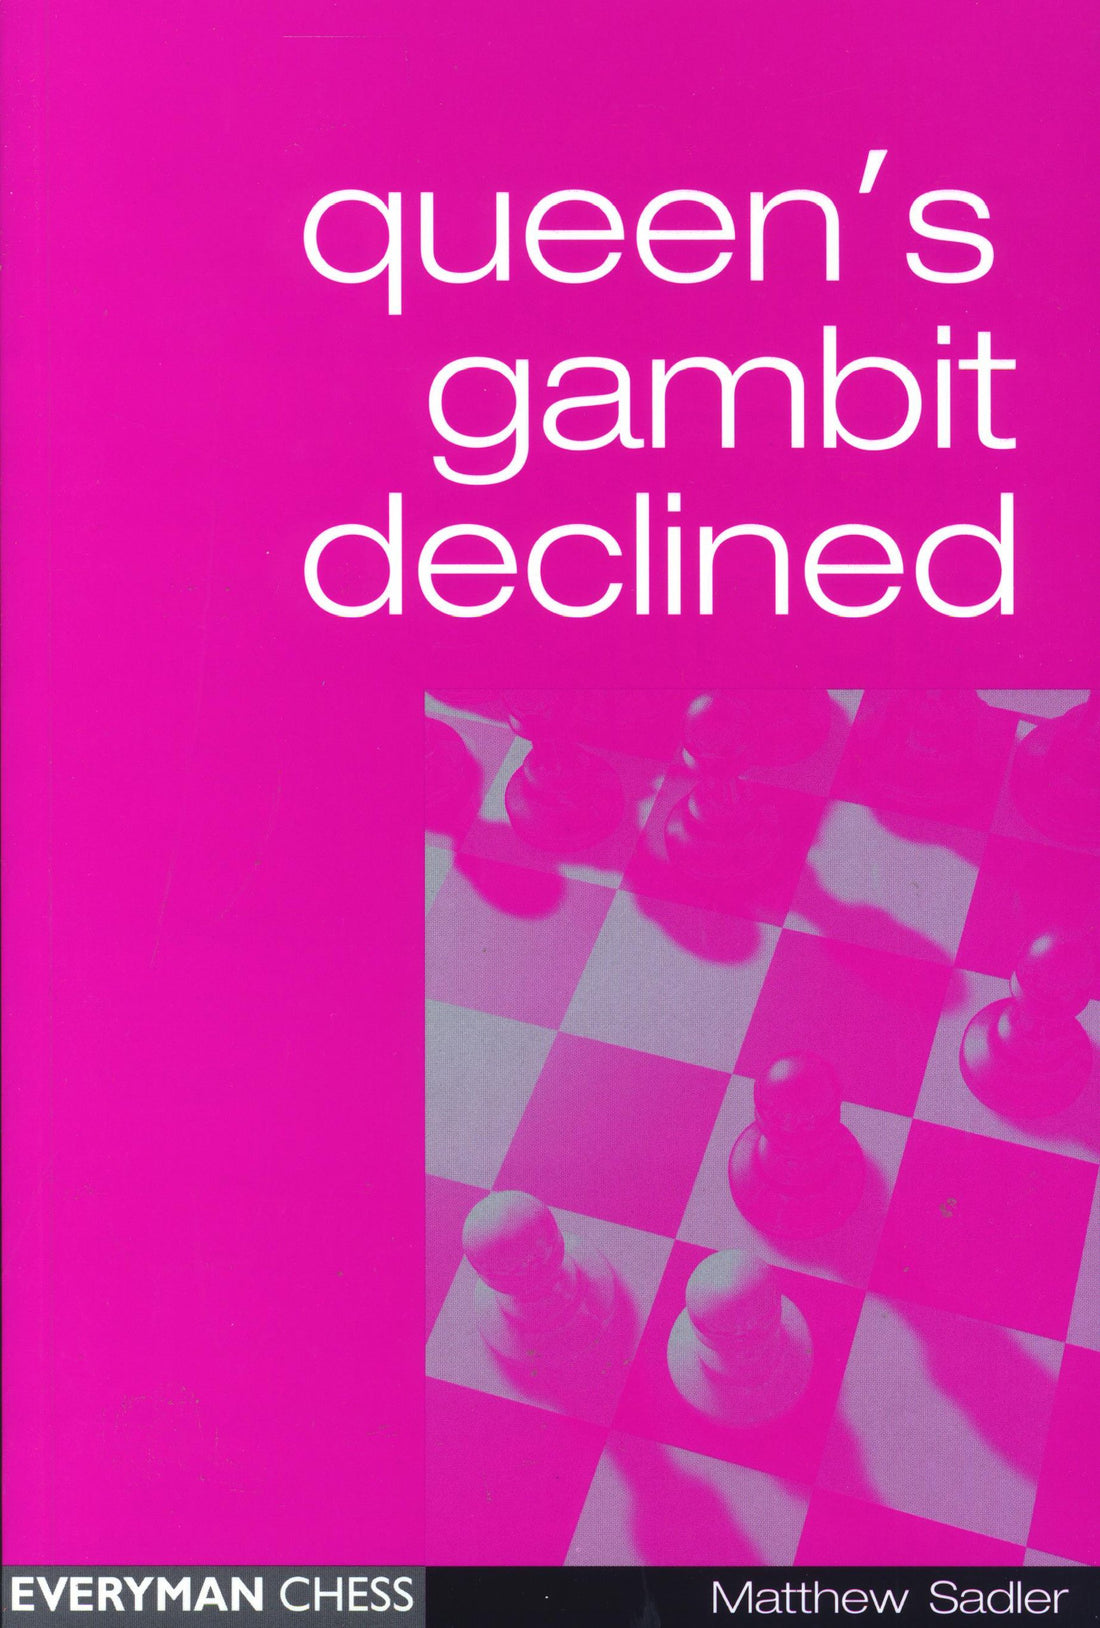 Queen's Gambit Declined, The Sensei Speedrun